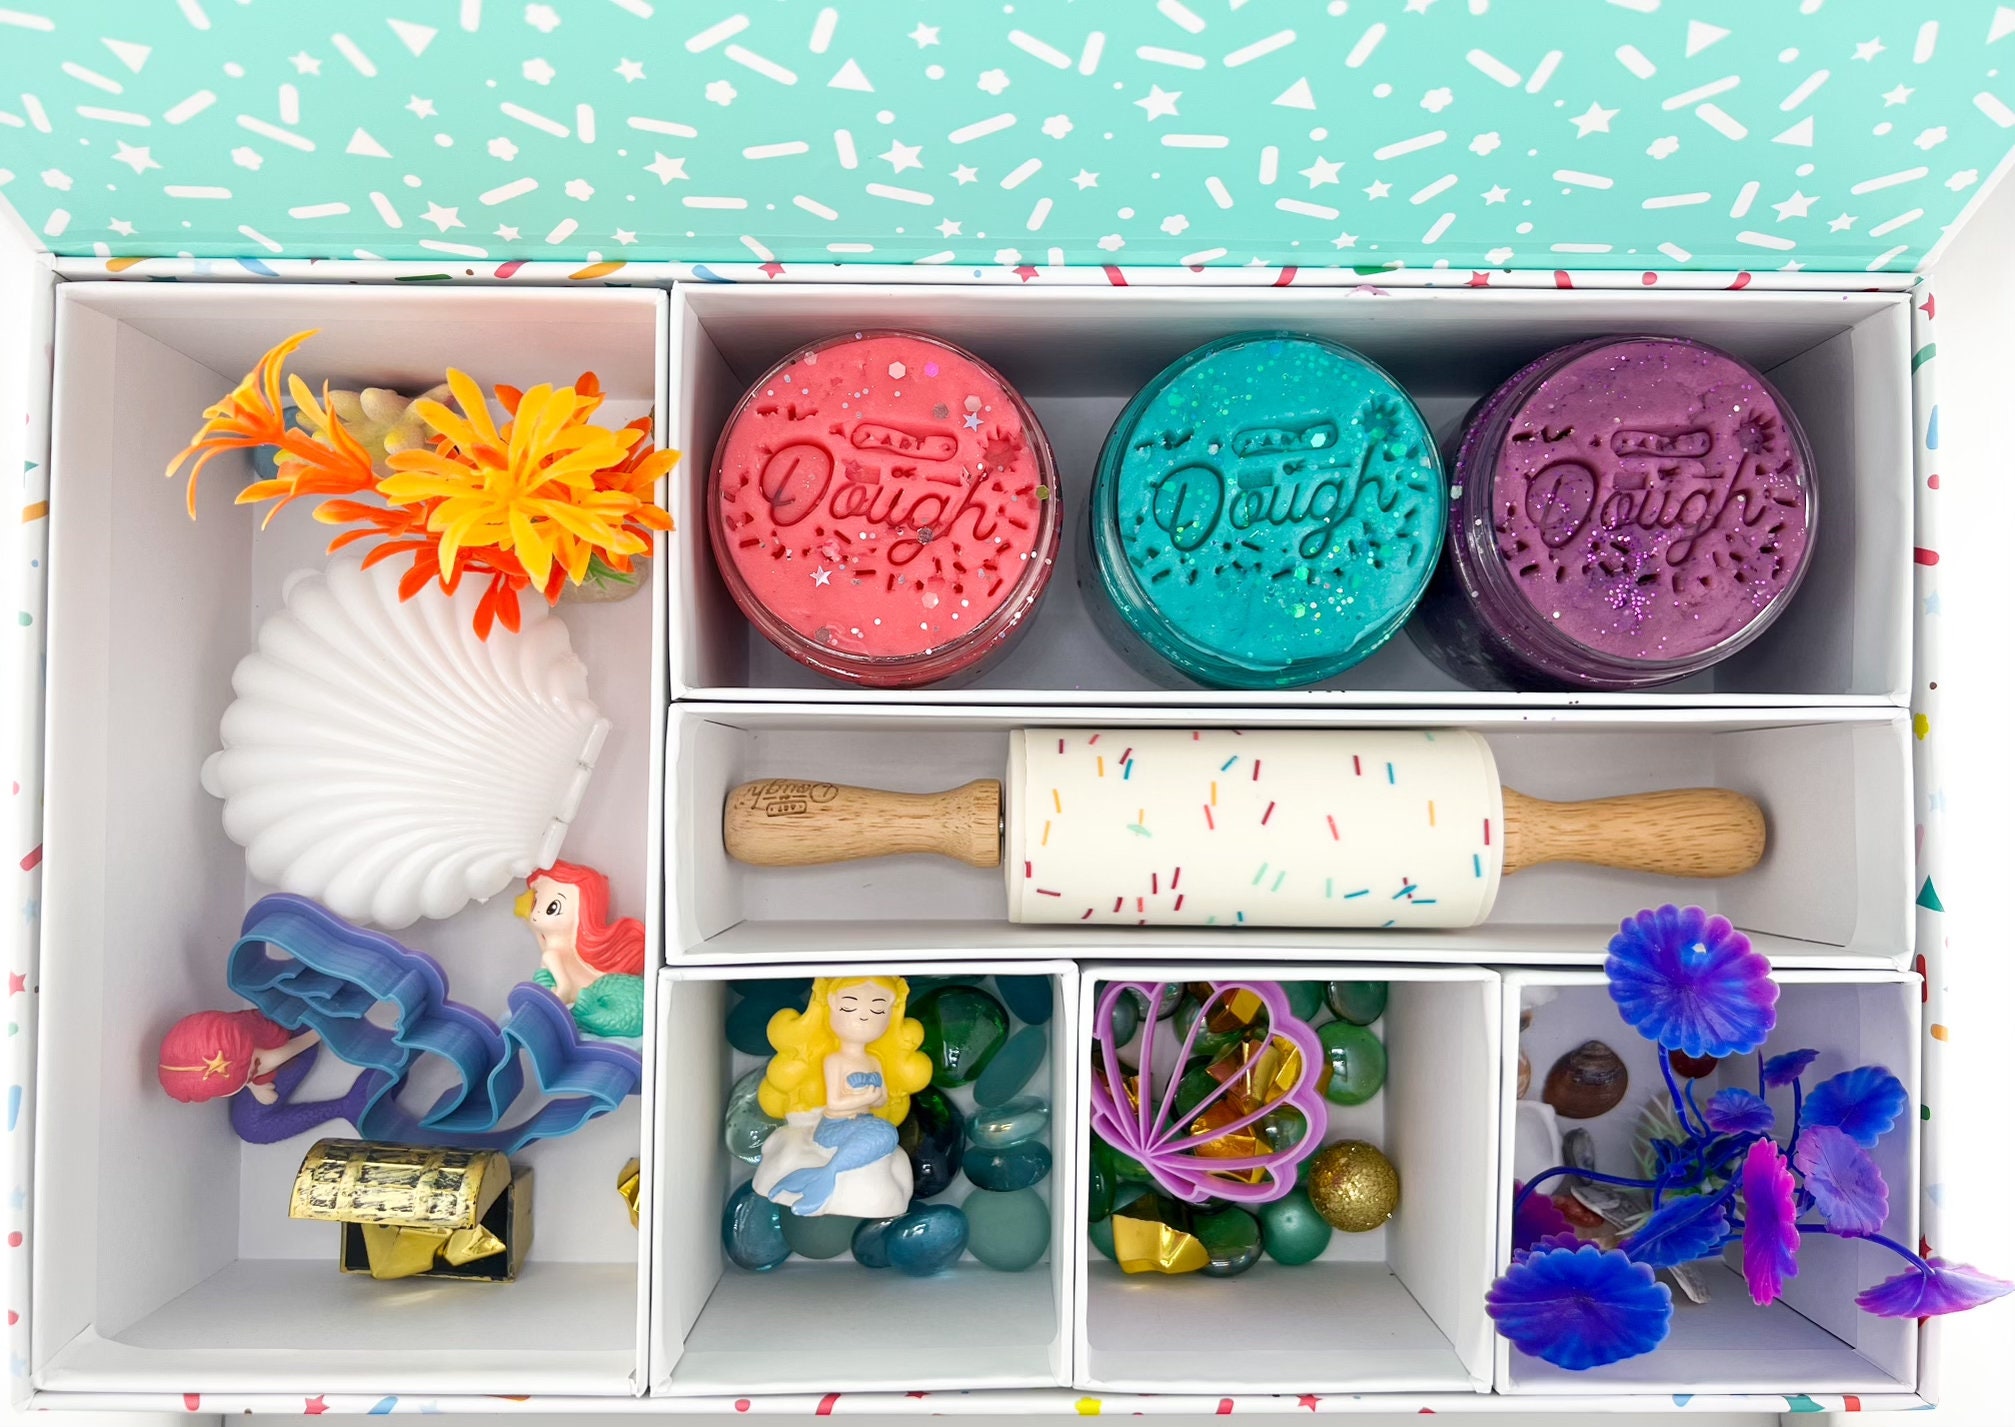 Playdough Kit, Ocean Play Dough Kit for Girls and Boys, Sensory